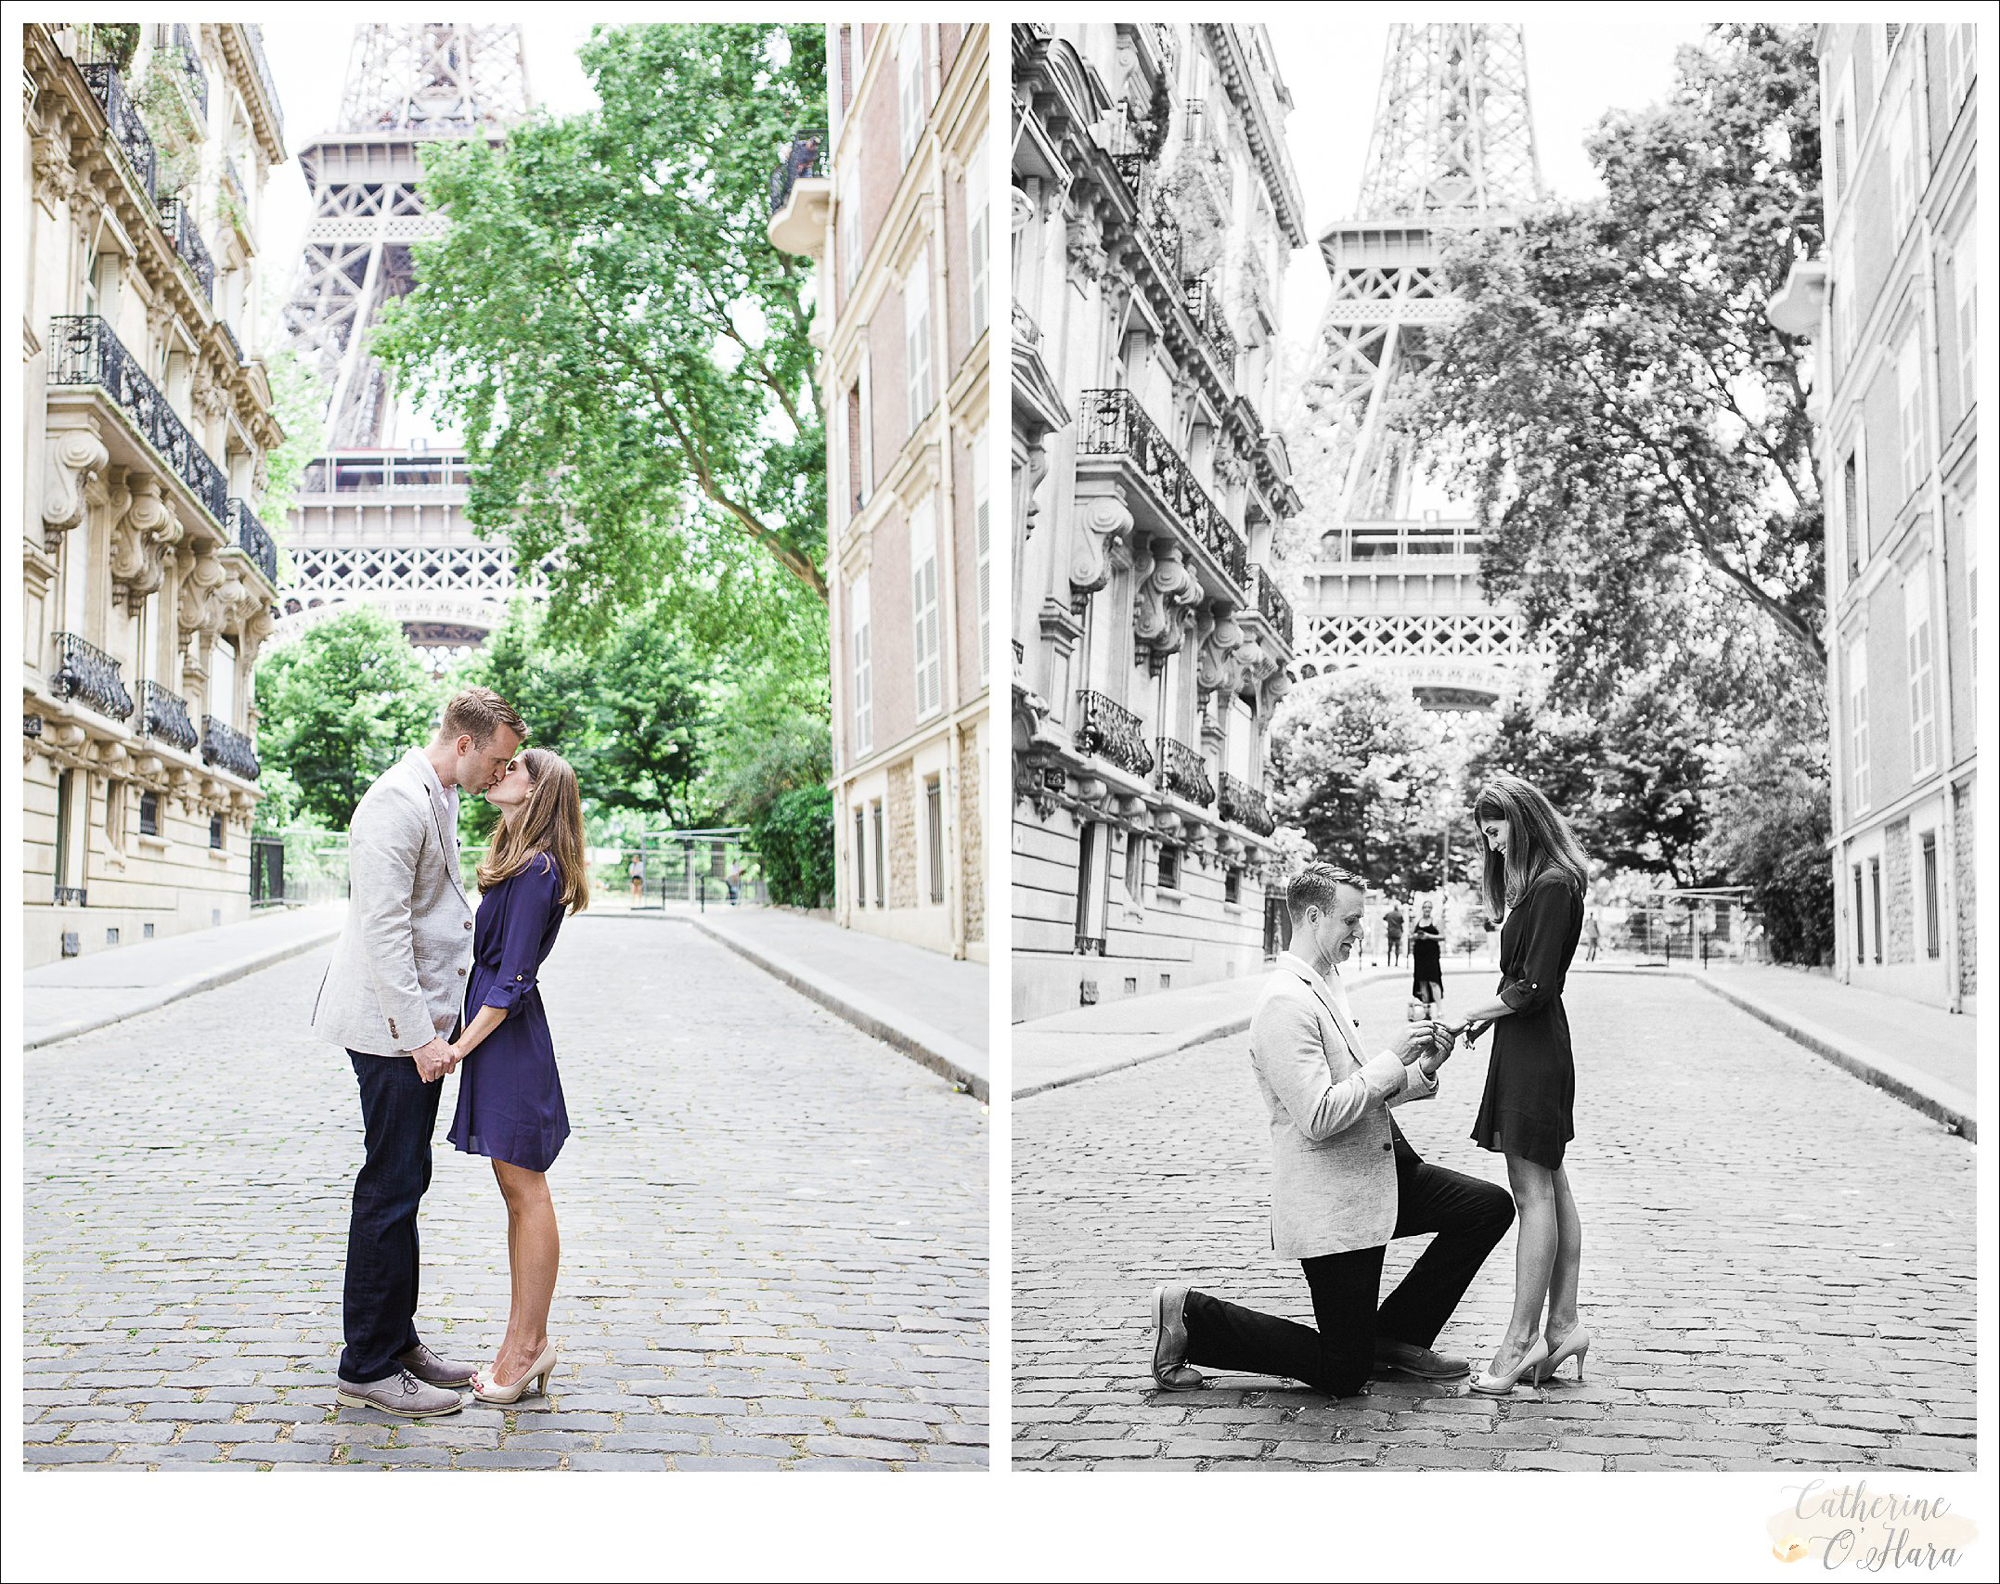 surprise proposal engagement photographer paris france-02.jpg